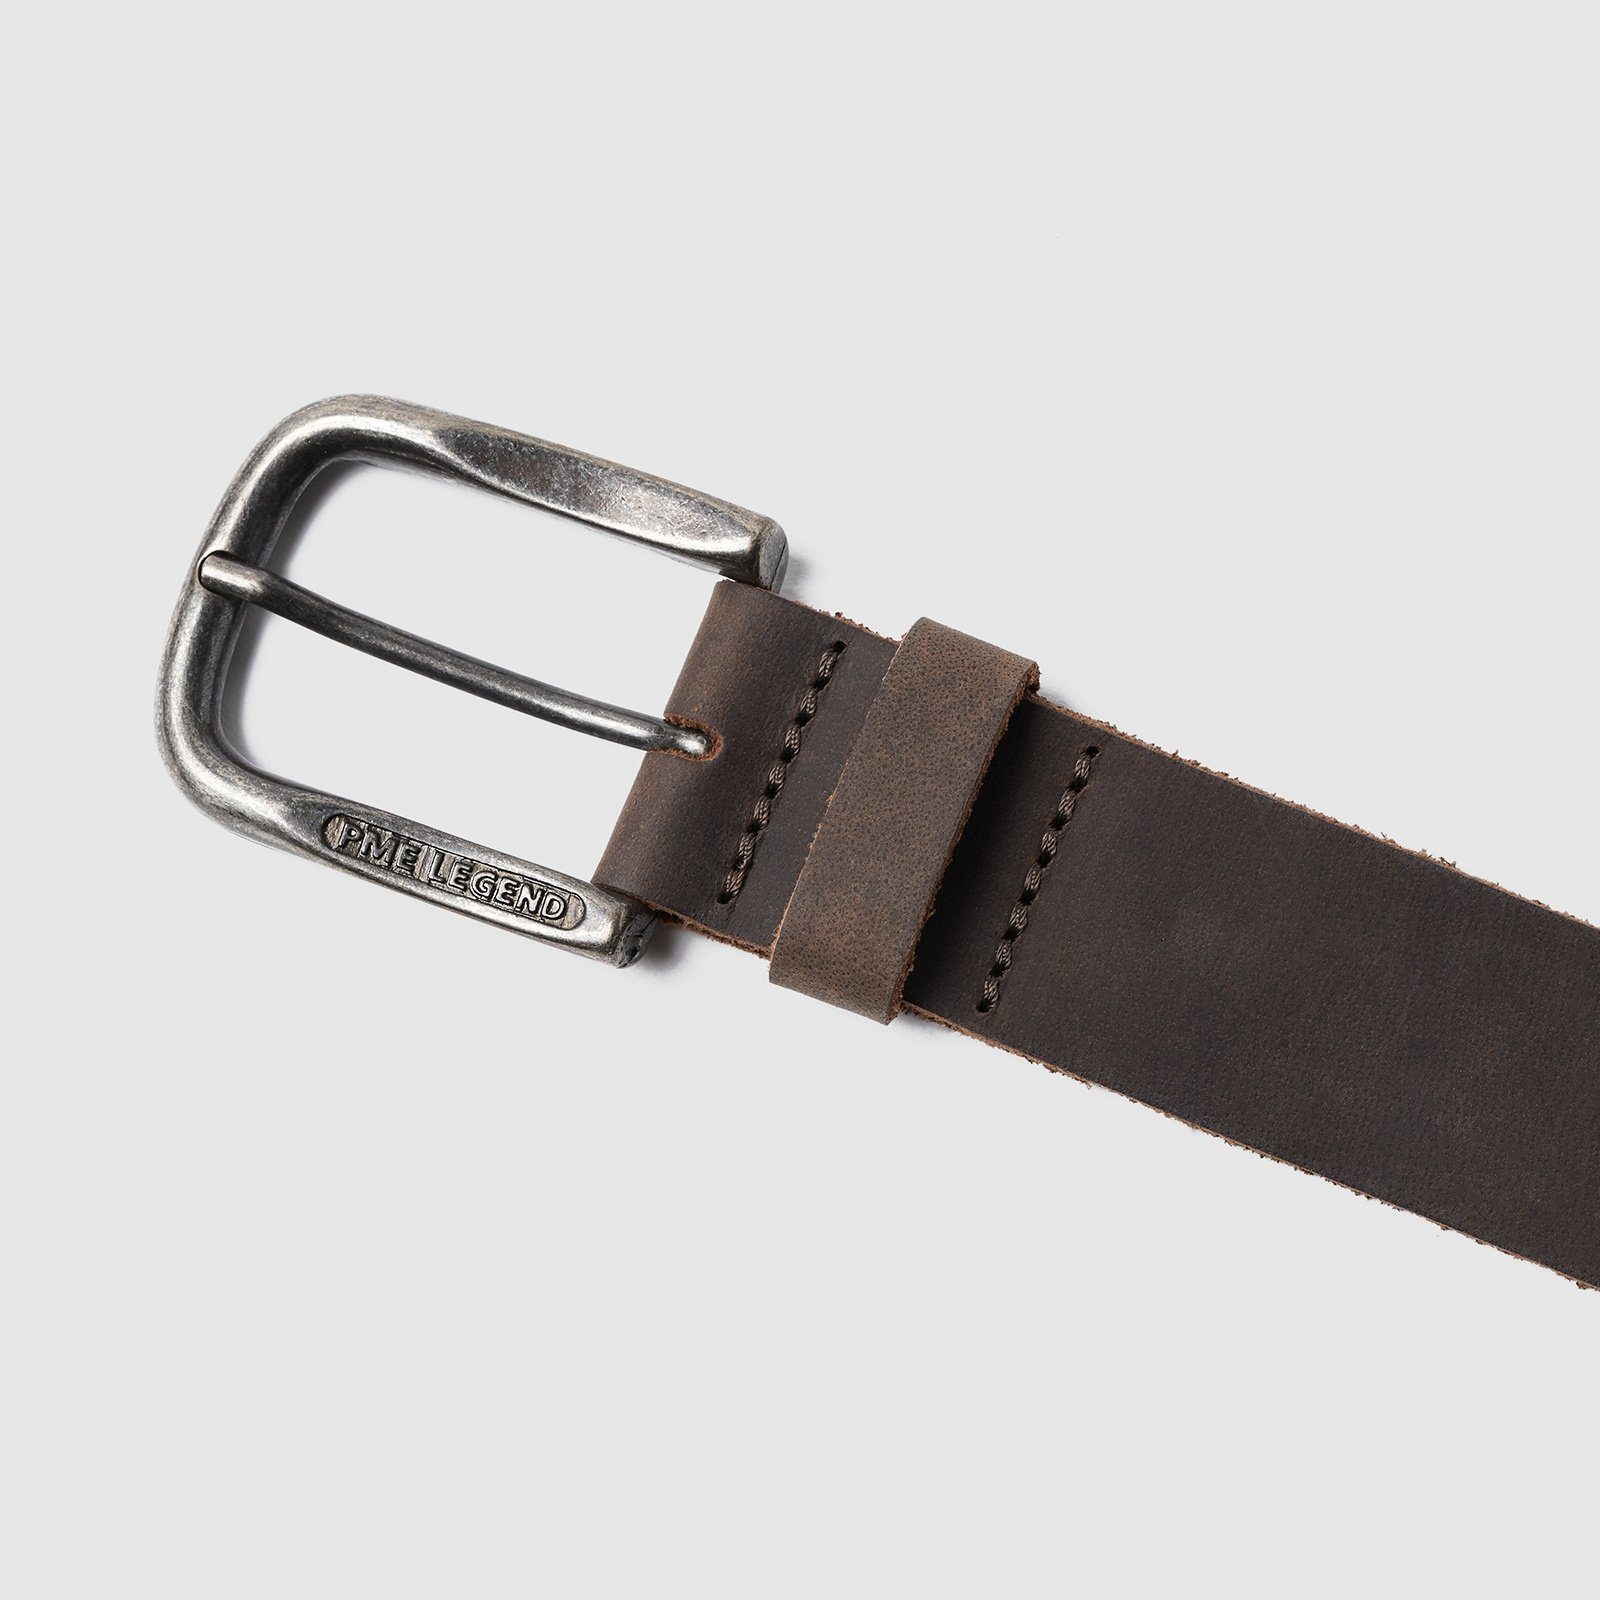 belt Leather Ledergürtel PME LEGEND Belt d.brown